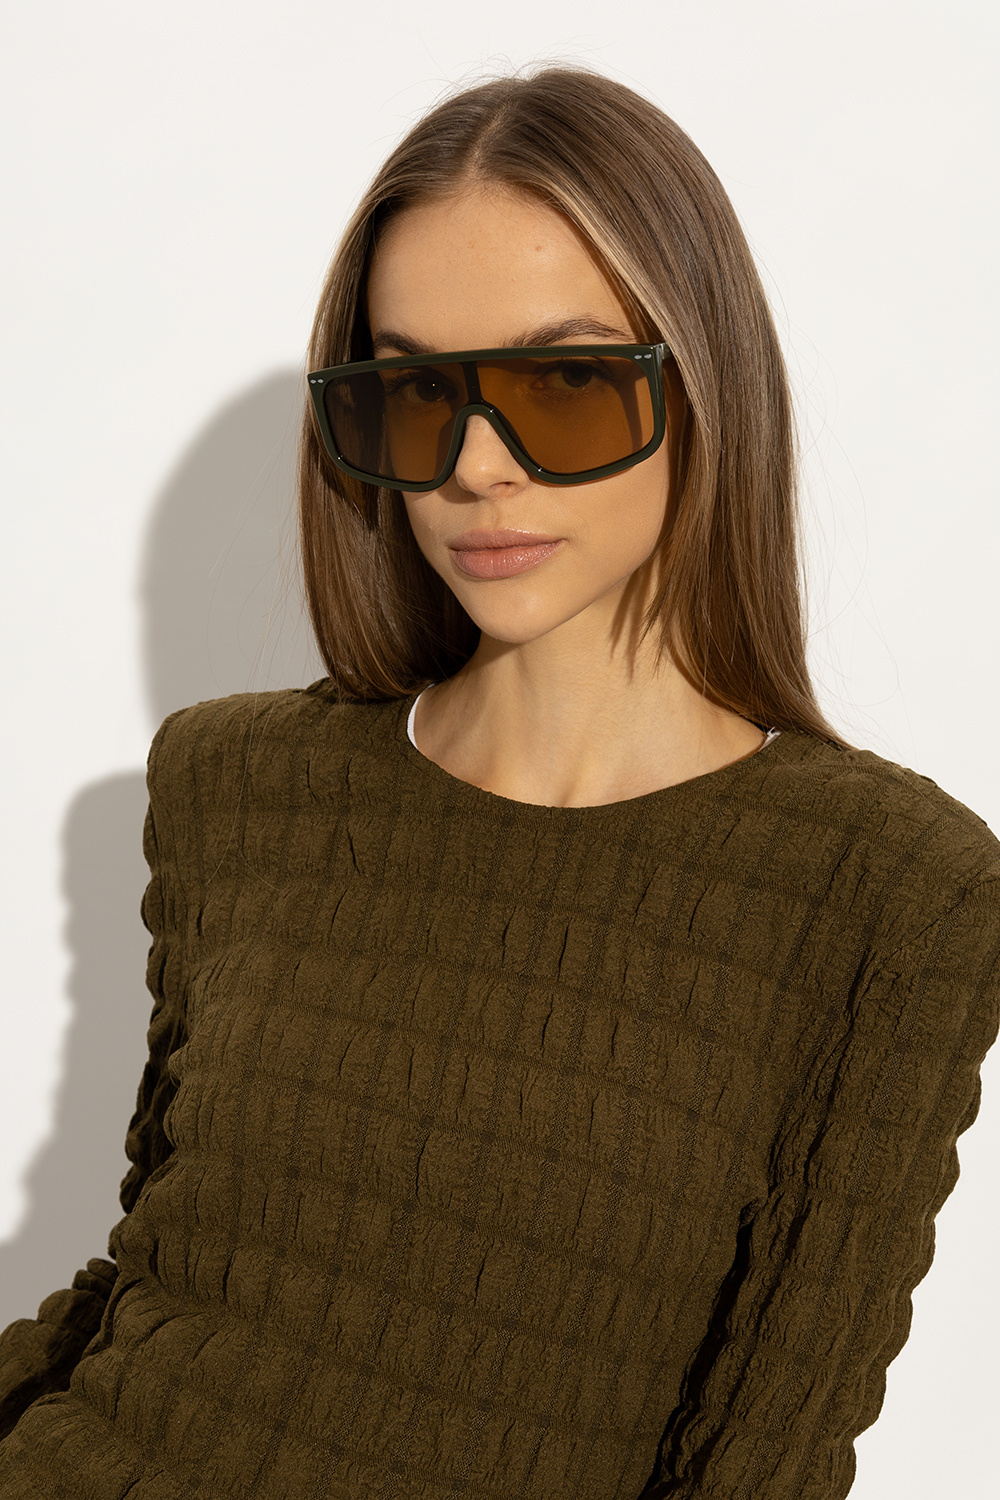 Isabel Marant Cazal square shaped sunglasses